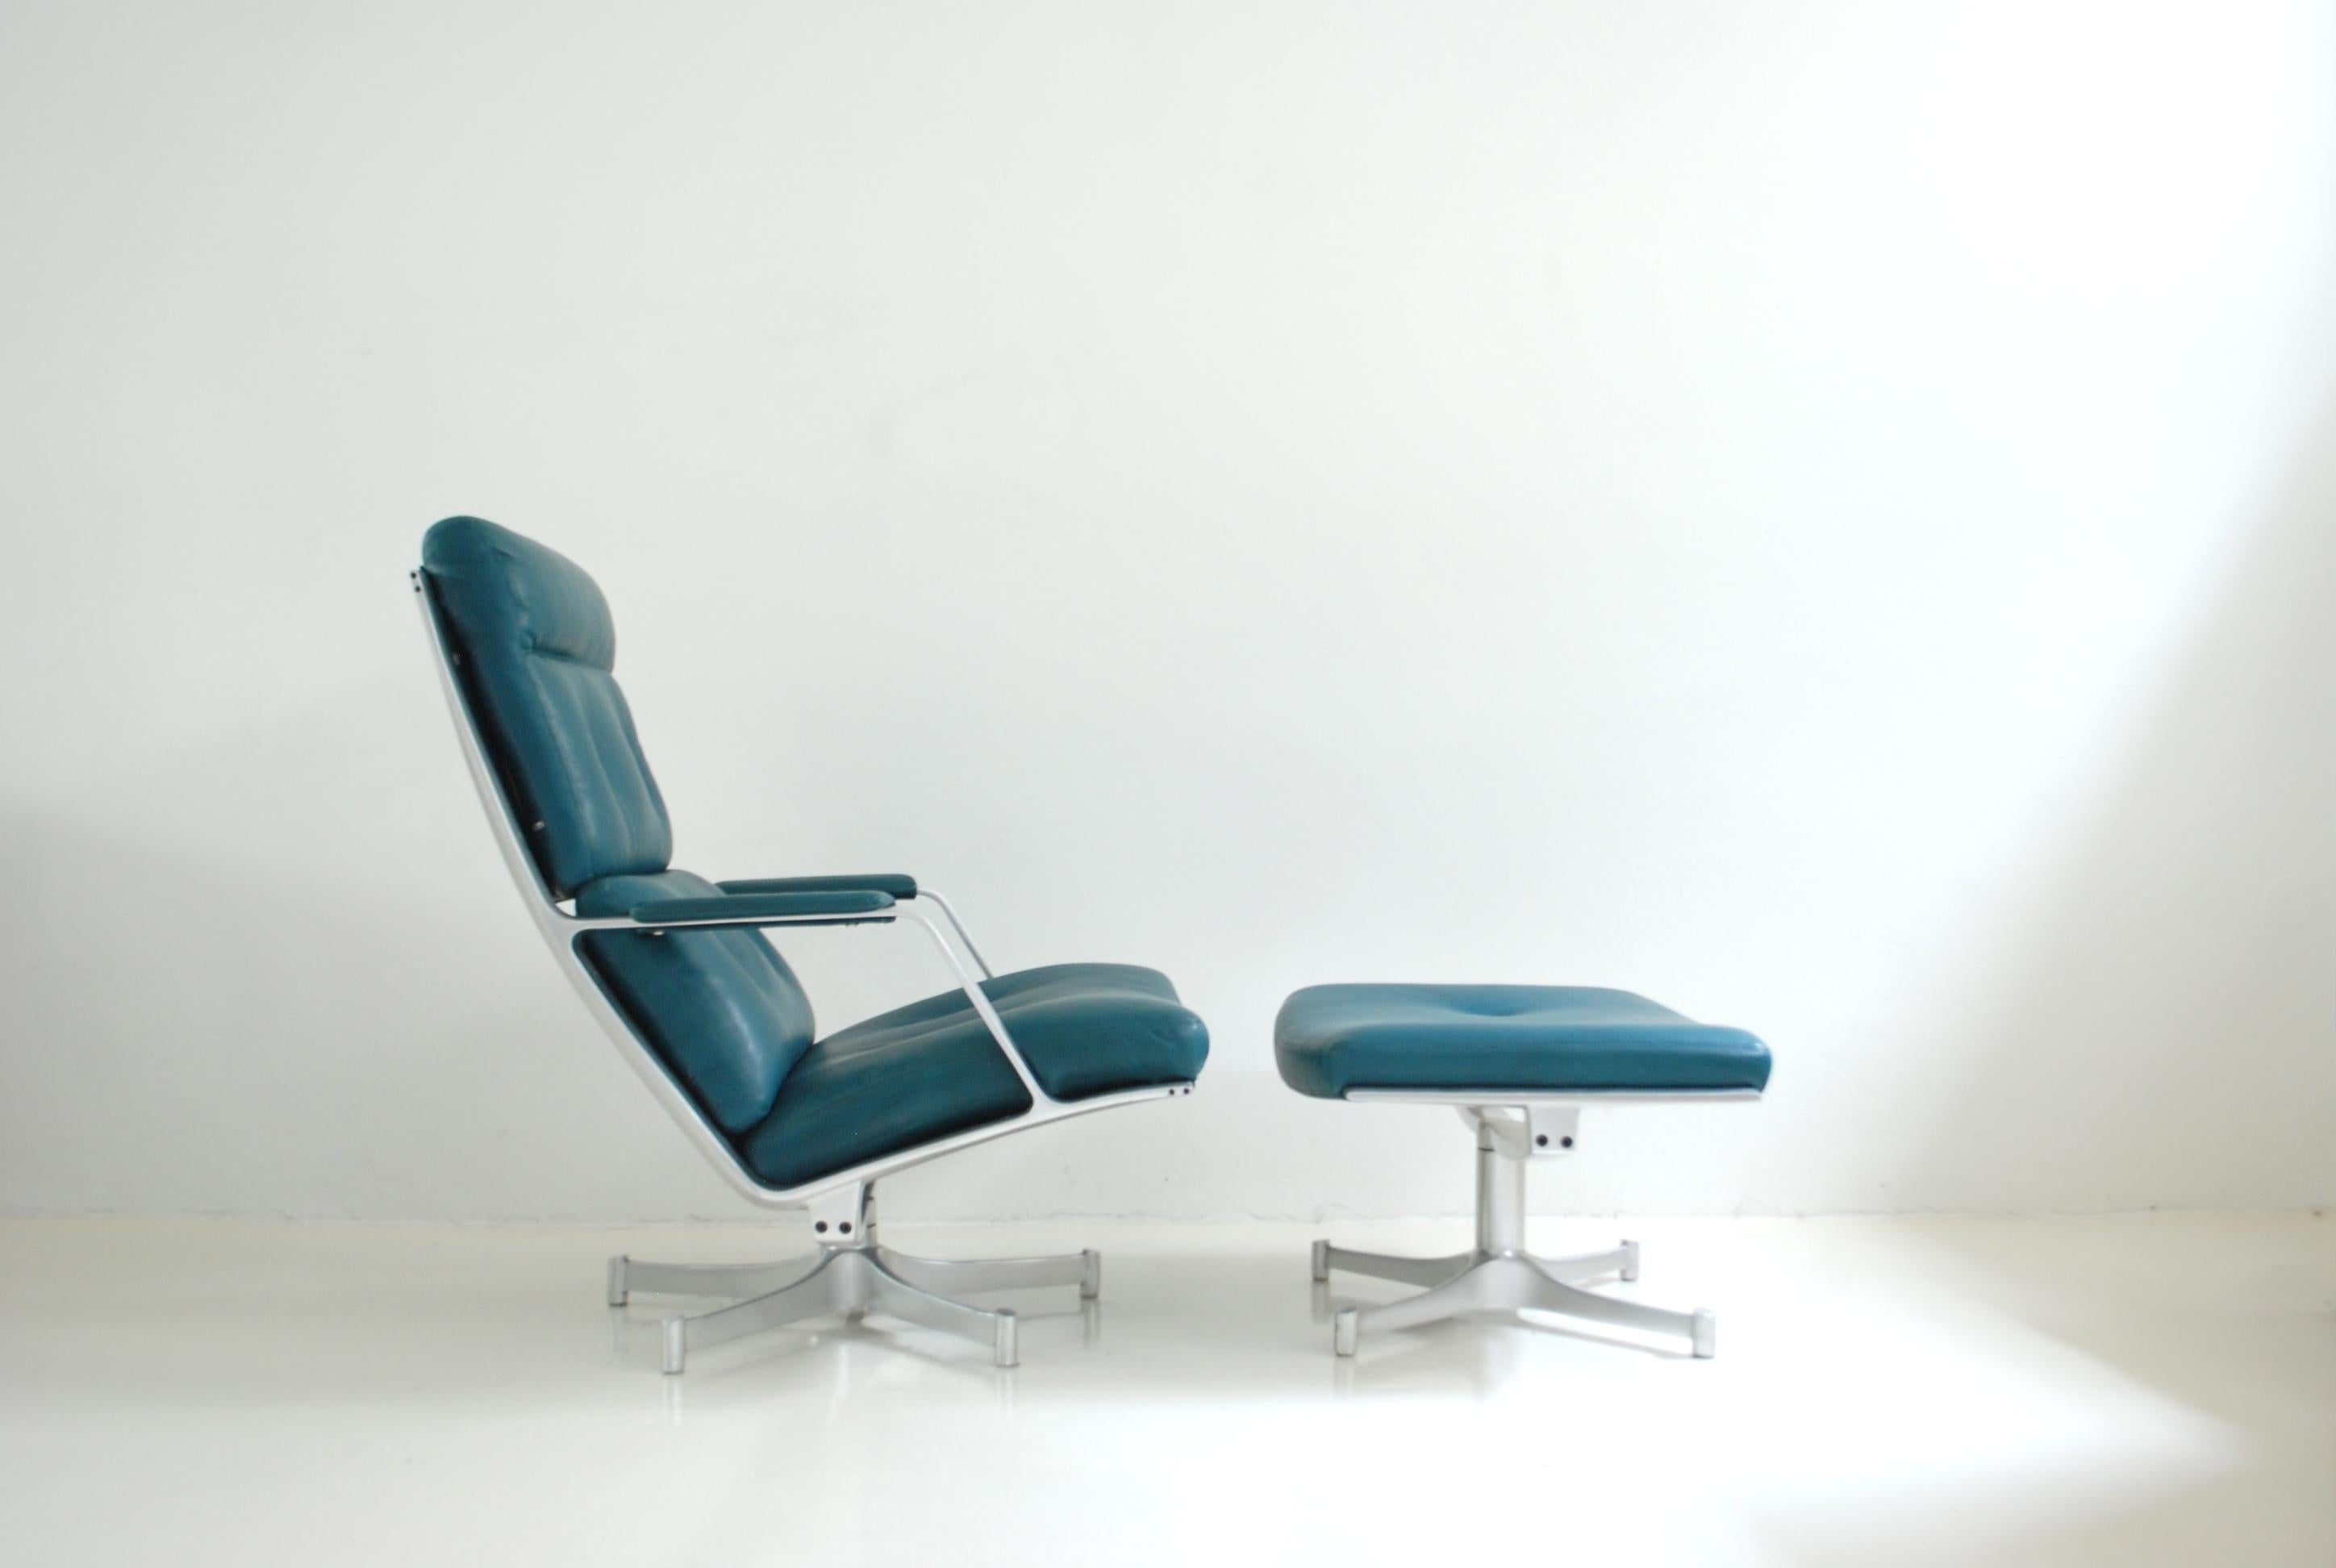 Cette chaise longue FK 85 a été réalisée par Jorgen Kastholm & Preben Fabricius pour Kill international.
Le fauteuil de salon et l'ottoman ont un cadre en aluminium pivotant et un cuir de couleur pétrole.
Elle était nouvellement tapissée de cuir